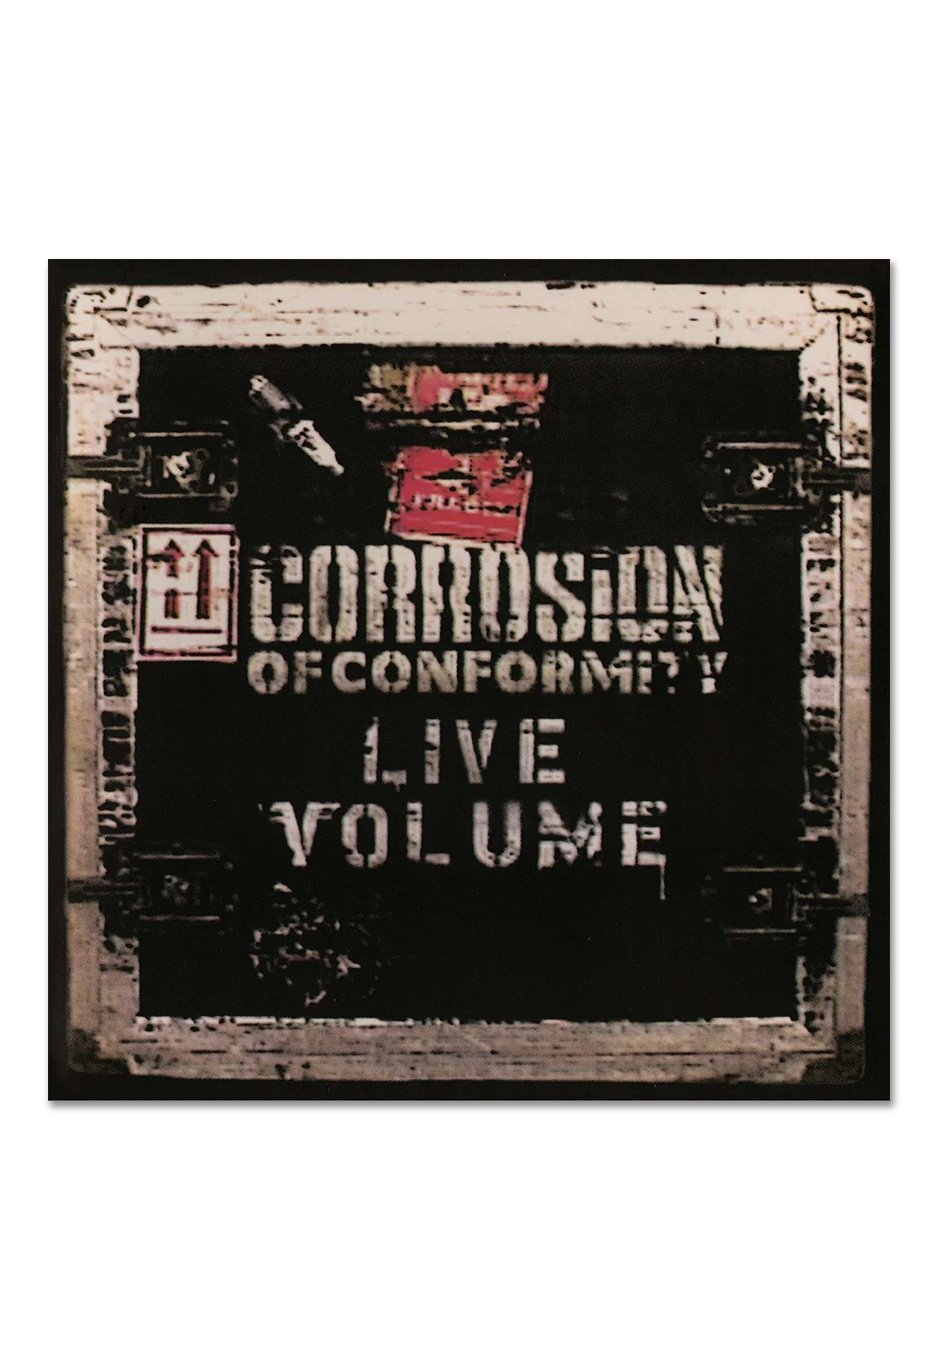 Corrosion Of Conformity - Live Volume Ltd. Silver - Colored 2 Vinyl